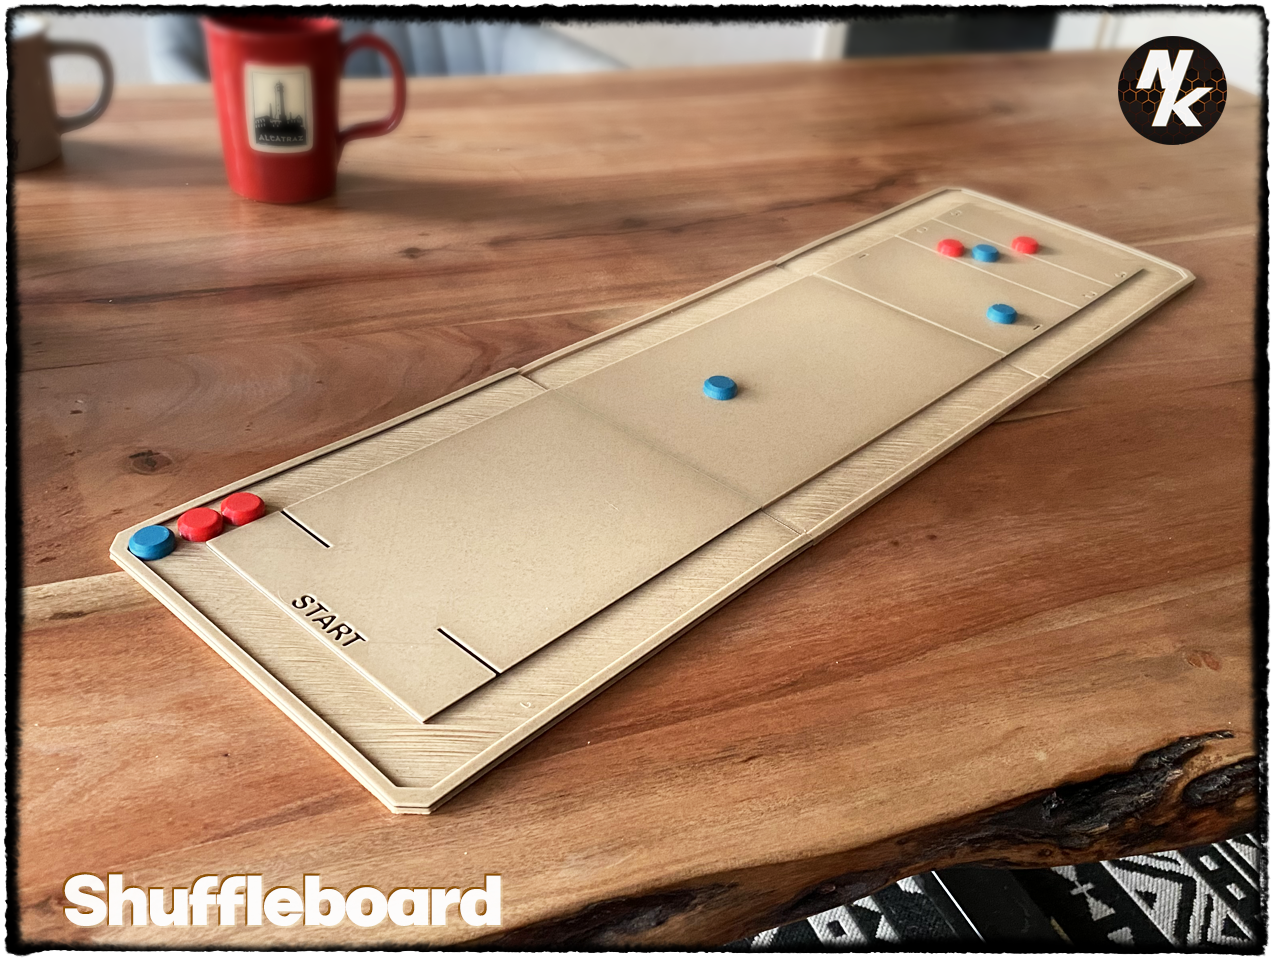 Shuffleboard